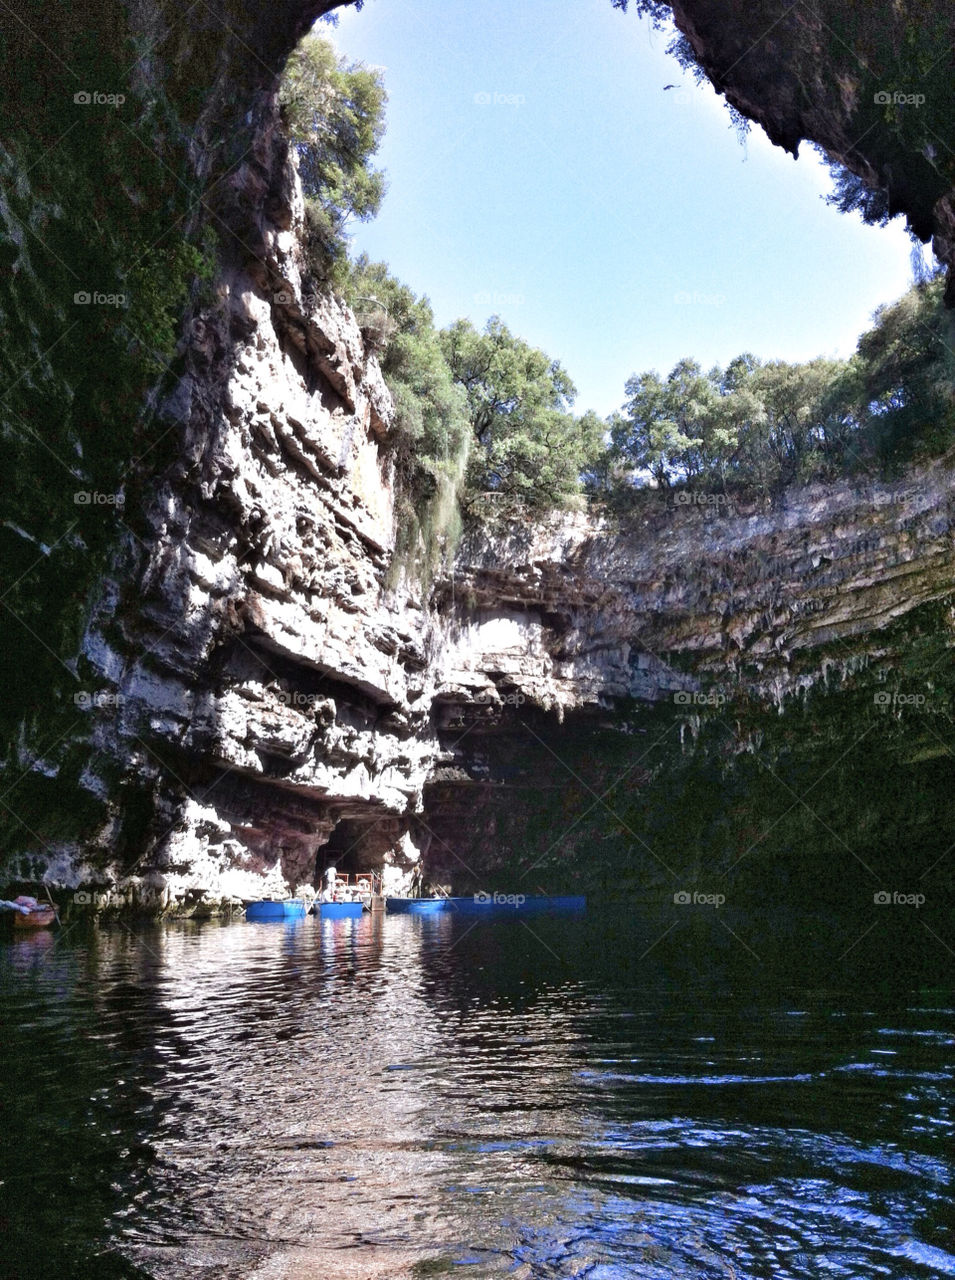 lake cave greece kefalonia by angiekou